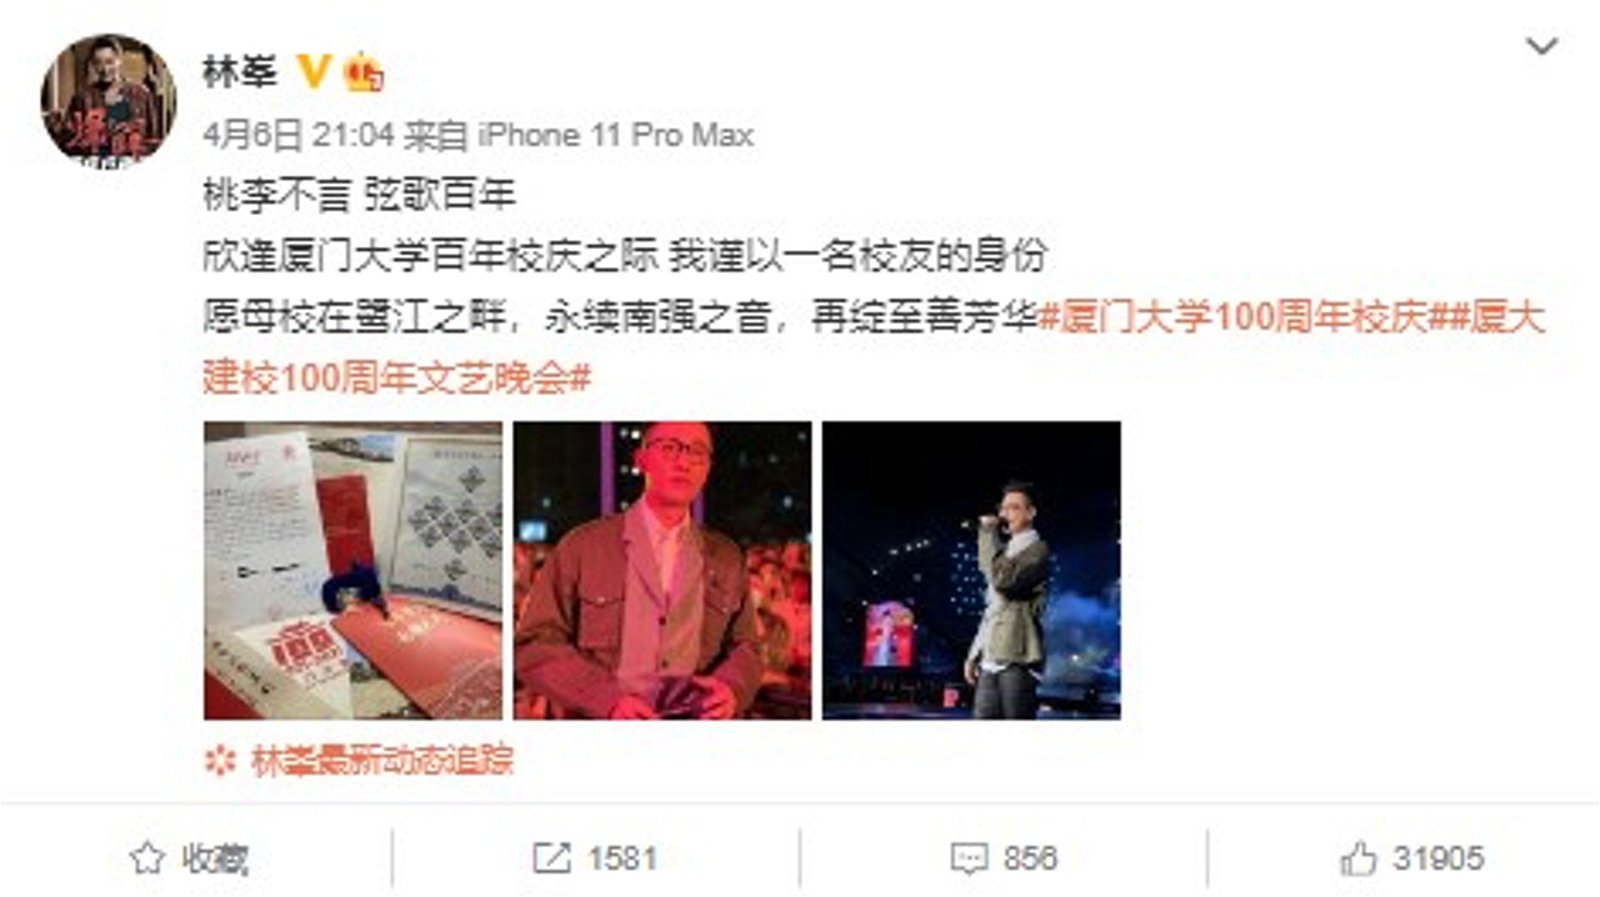 林峰也在微博上开心上传这段回忆。